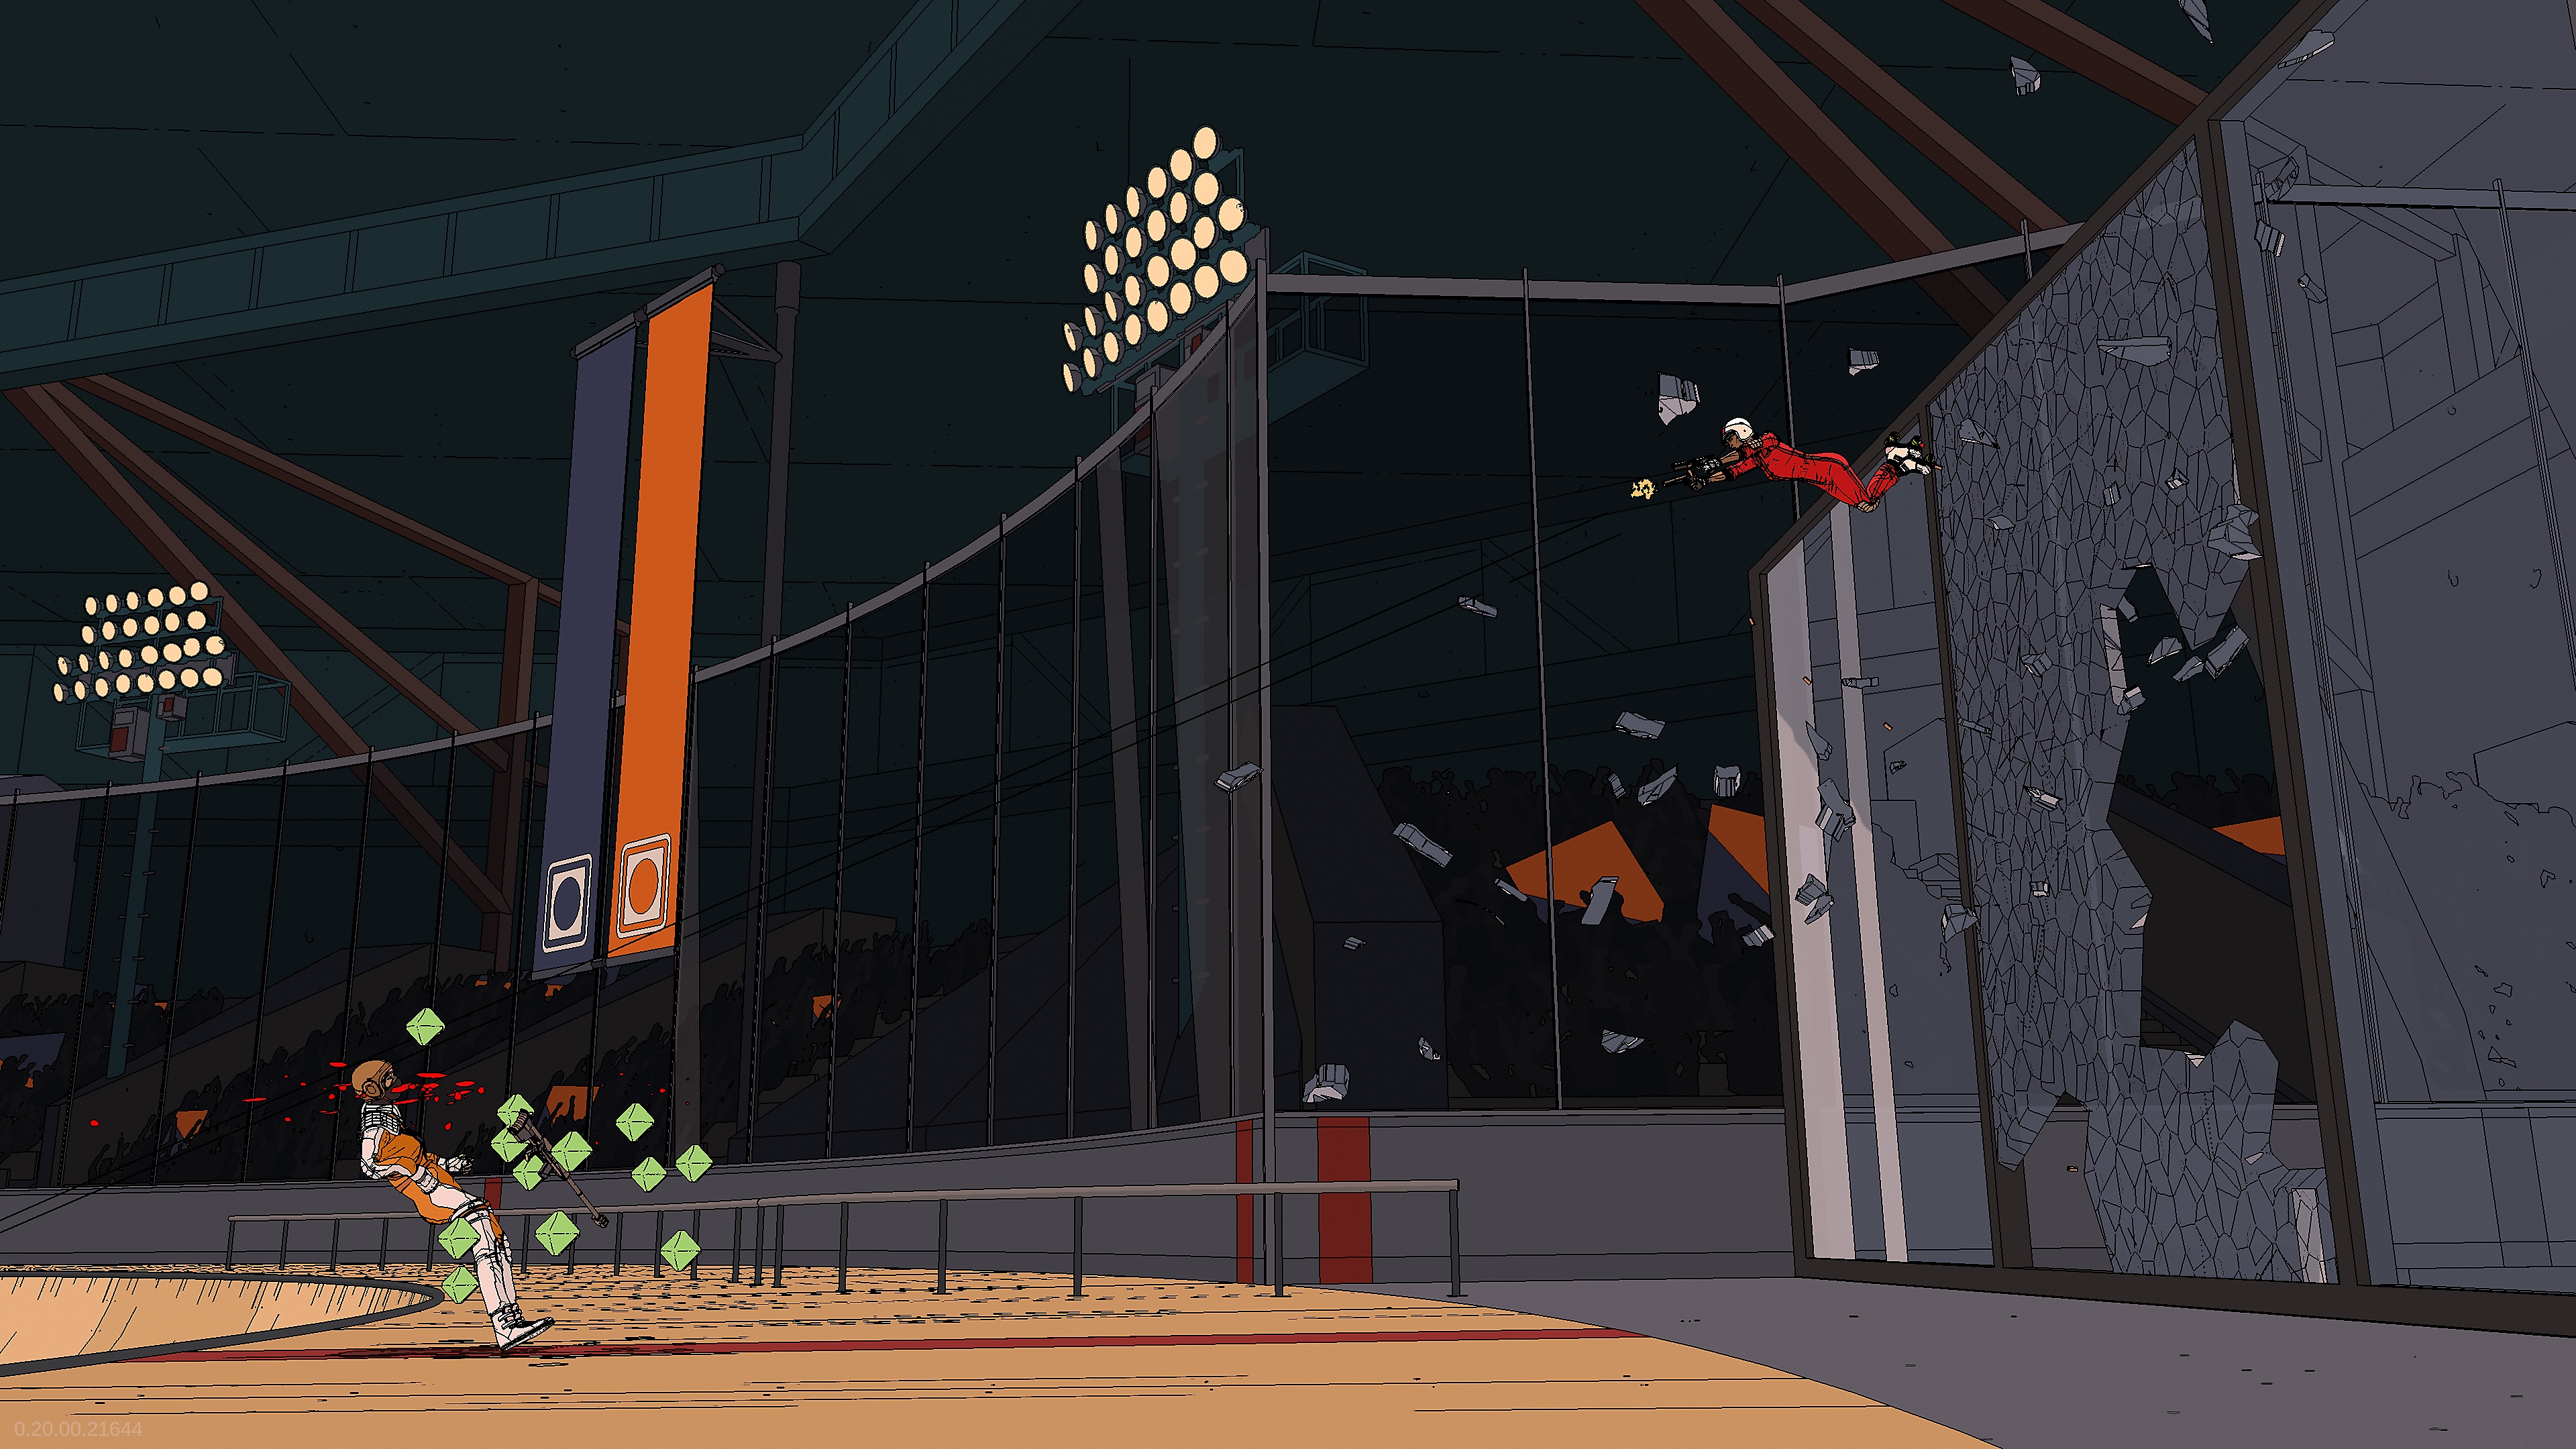 لقطة شاشة للعبة Rollerdrome تعرض أحد المقاتلين يندفع نحو جدار زجاجي باتجاه الخصم